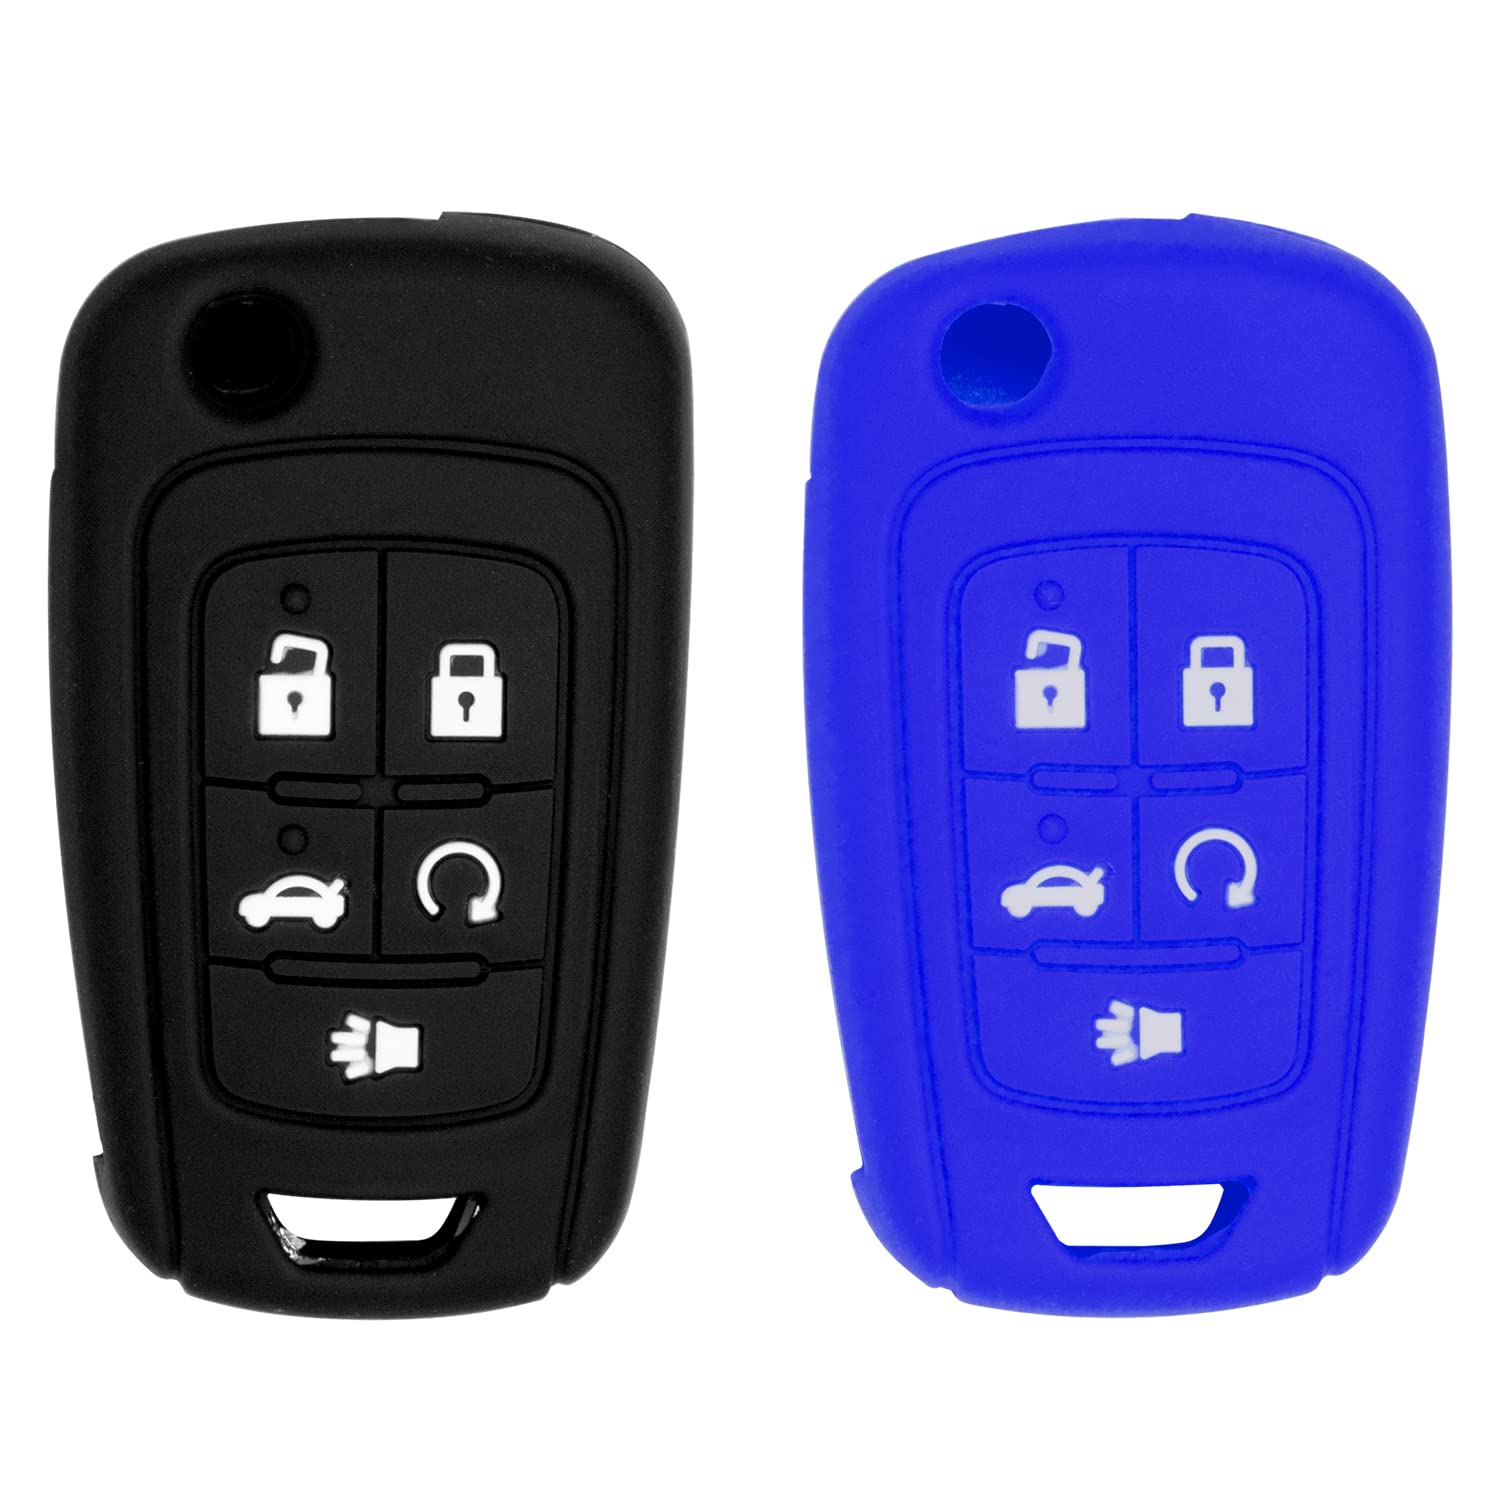 Silicone case for Flip Key 5 Button for Cruze Equinox Impala Malibu Sonic Terrain Lacrosse Regal Verano Encore Allure (Black and Blue)